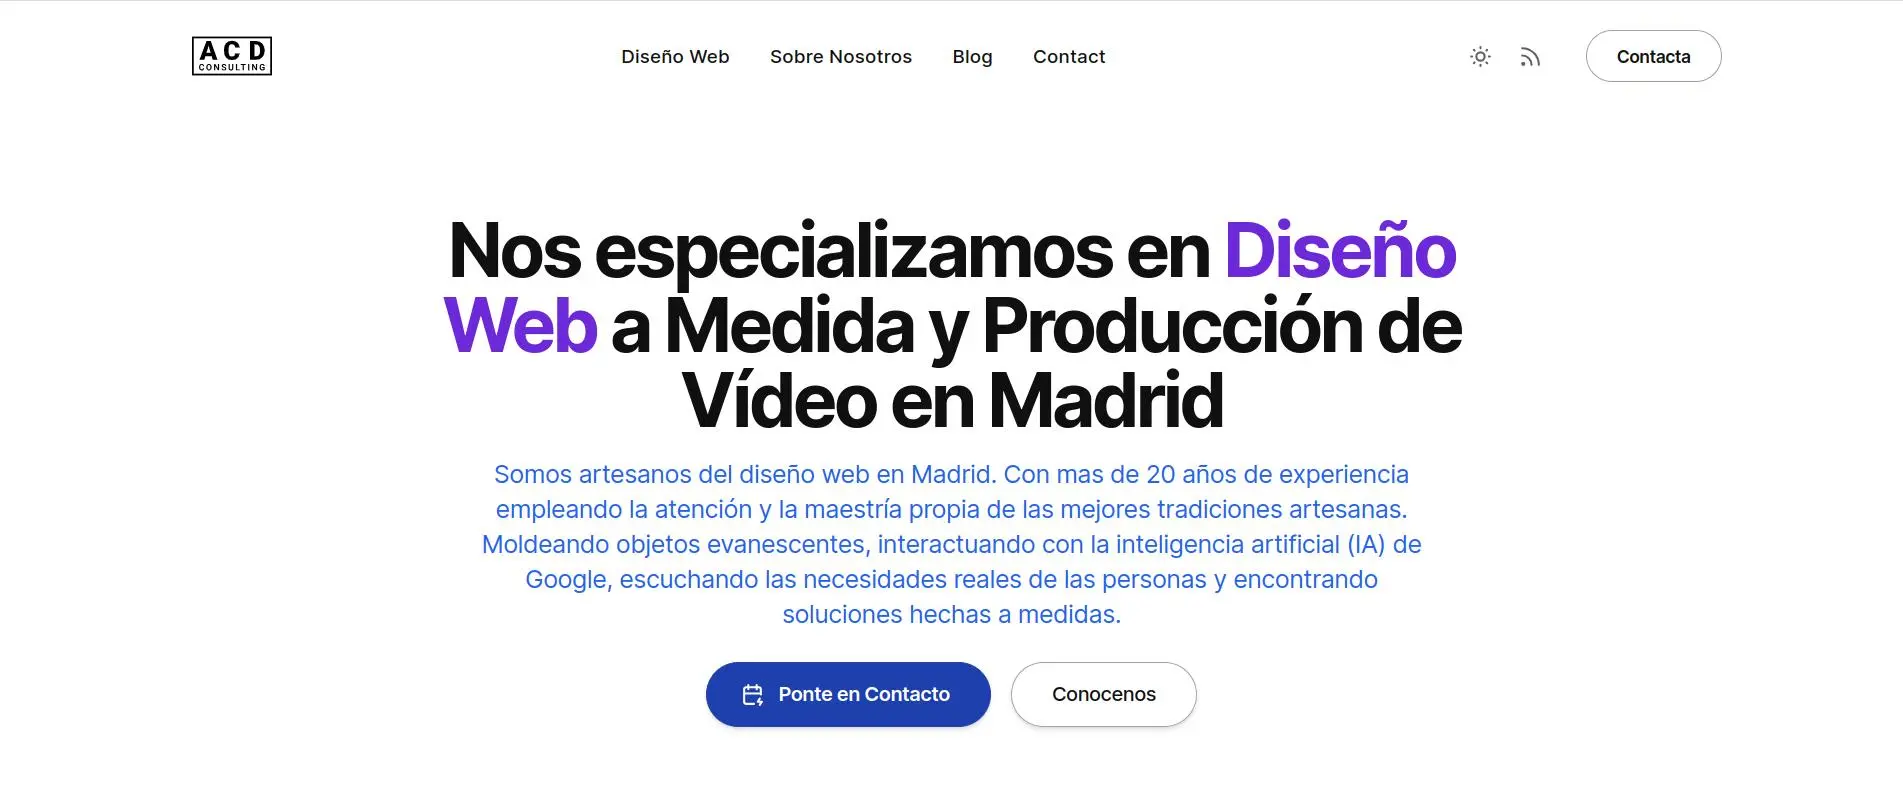 Página web de ACD Consulting una de las agencias de diseño web con más experiencia del sector. Podemos ver su logo y el texto de cabecera de su web "Nos especializamos en Diseño Web a Medida y Producción de Vídeo en Madrid
"